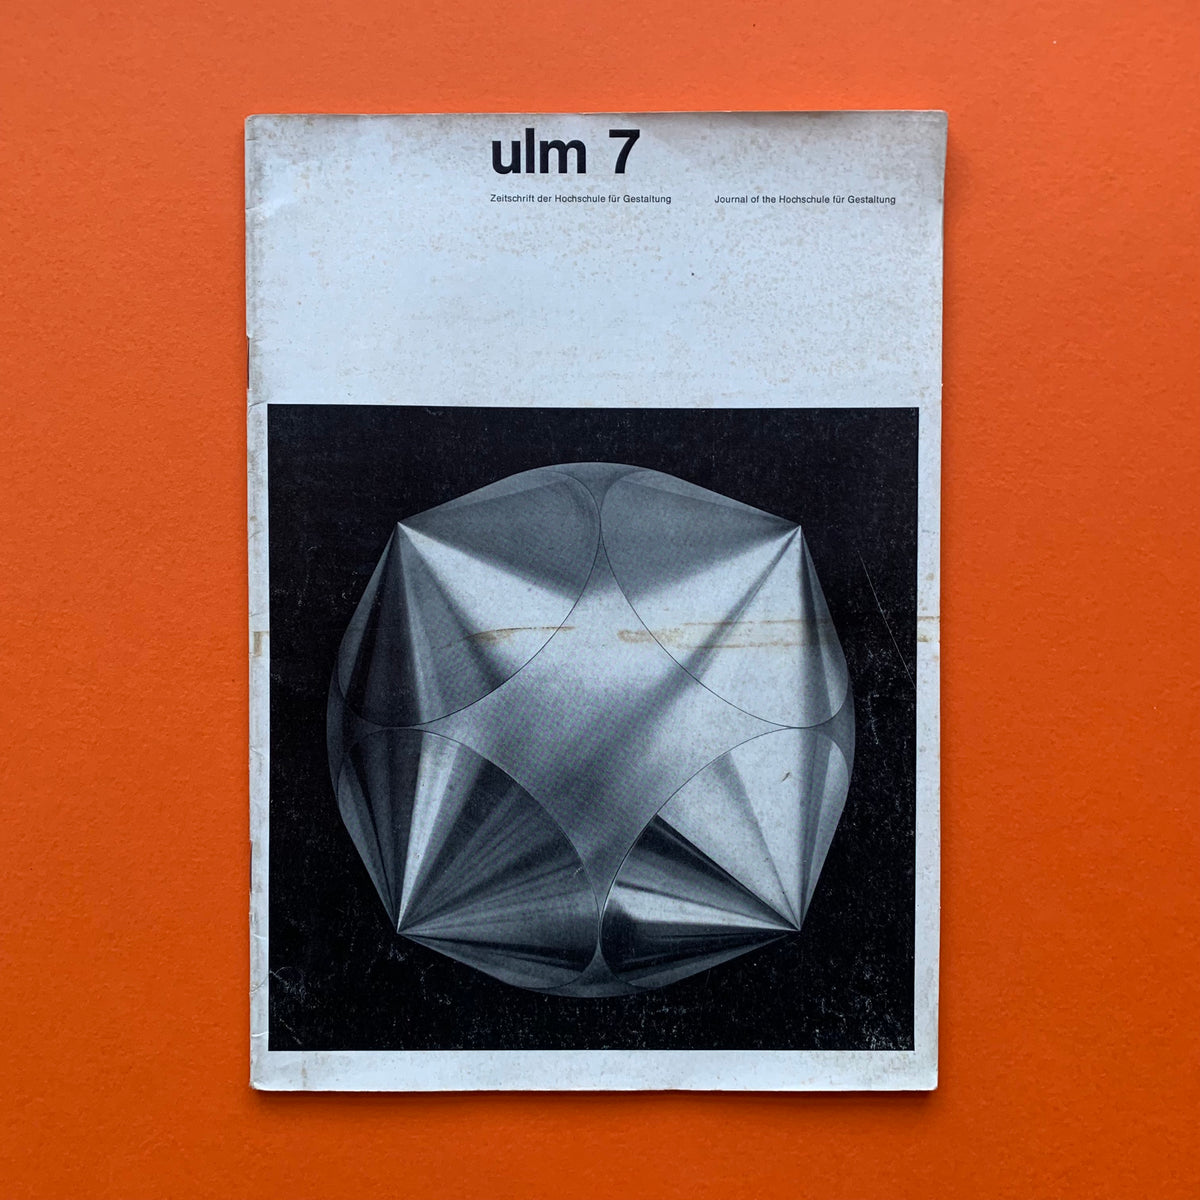 ulm 7: Zeitschrift der Hochschule für Gestaltung